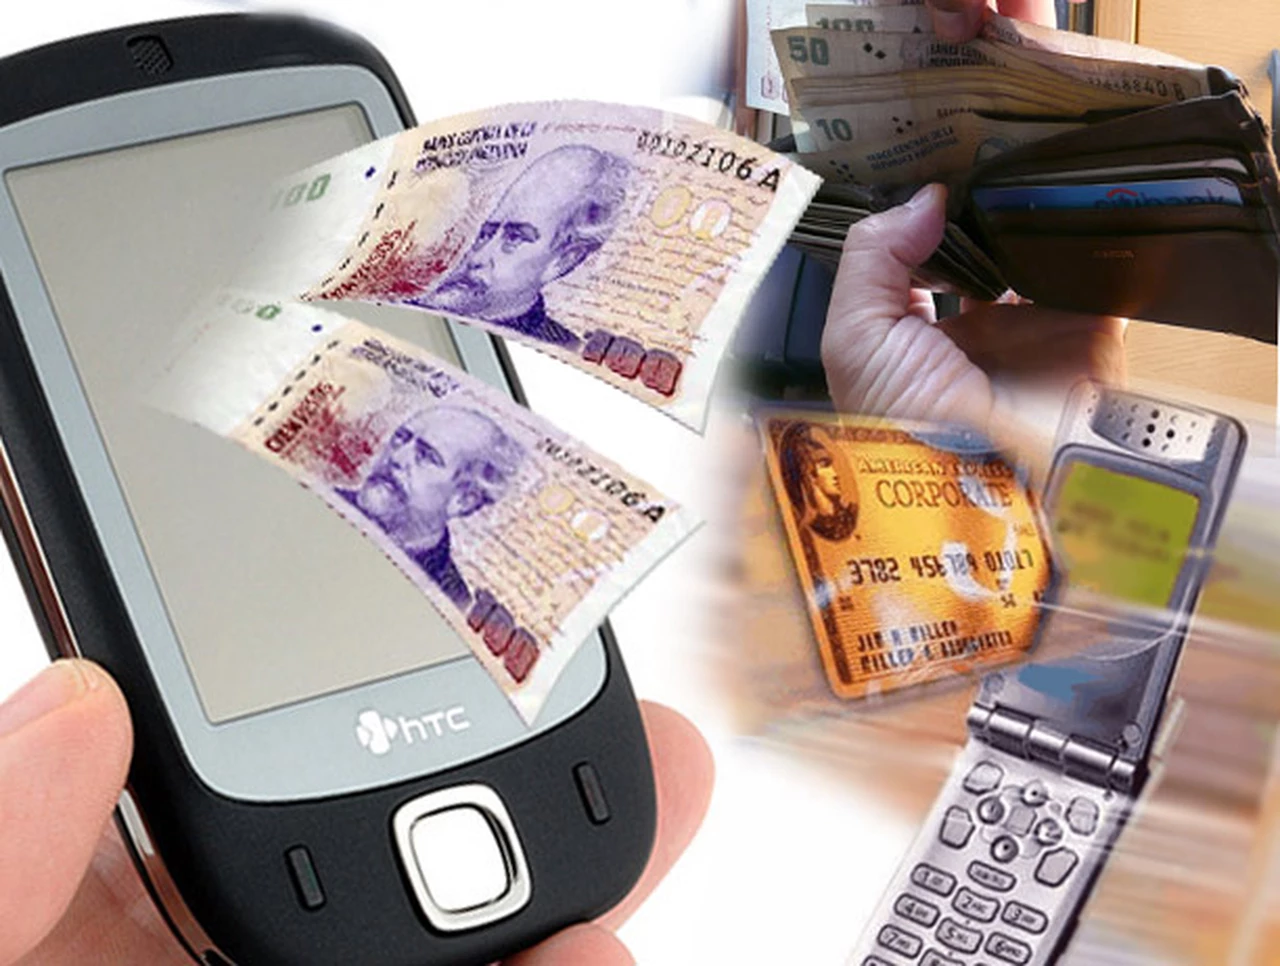 Telefónica y MasterCard presentan una "billetera móvil" en la Argentina